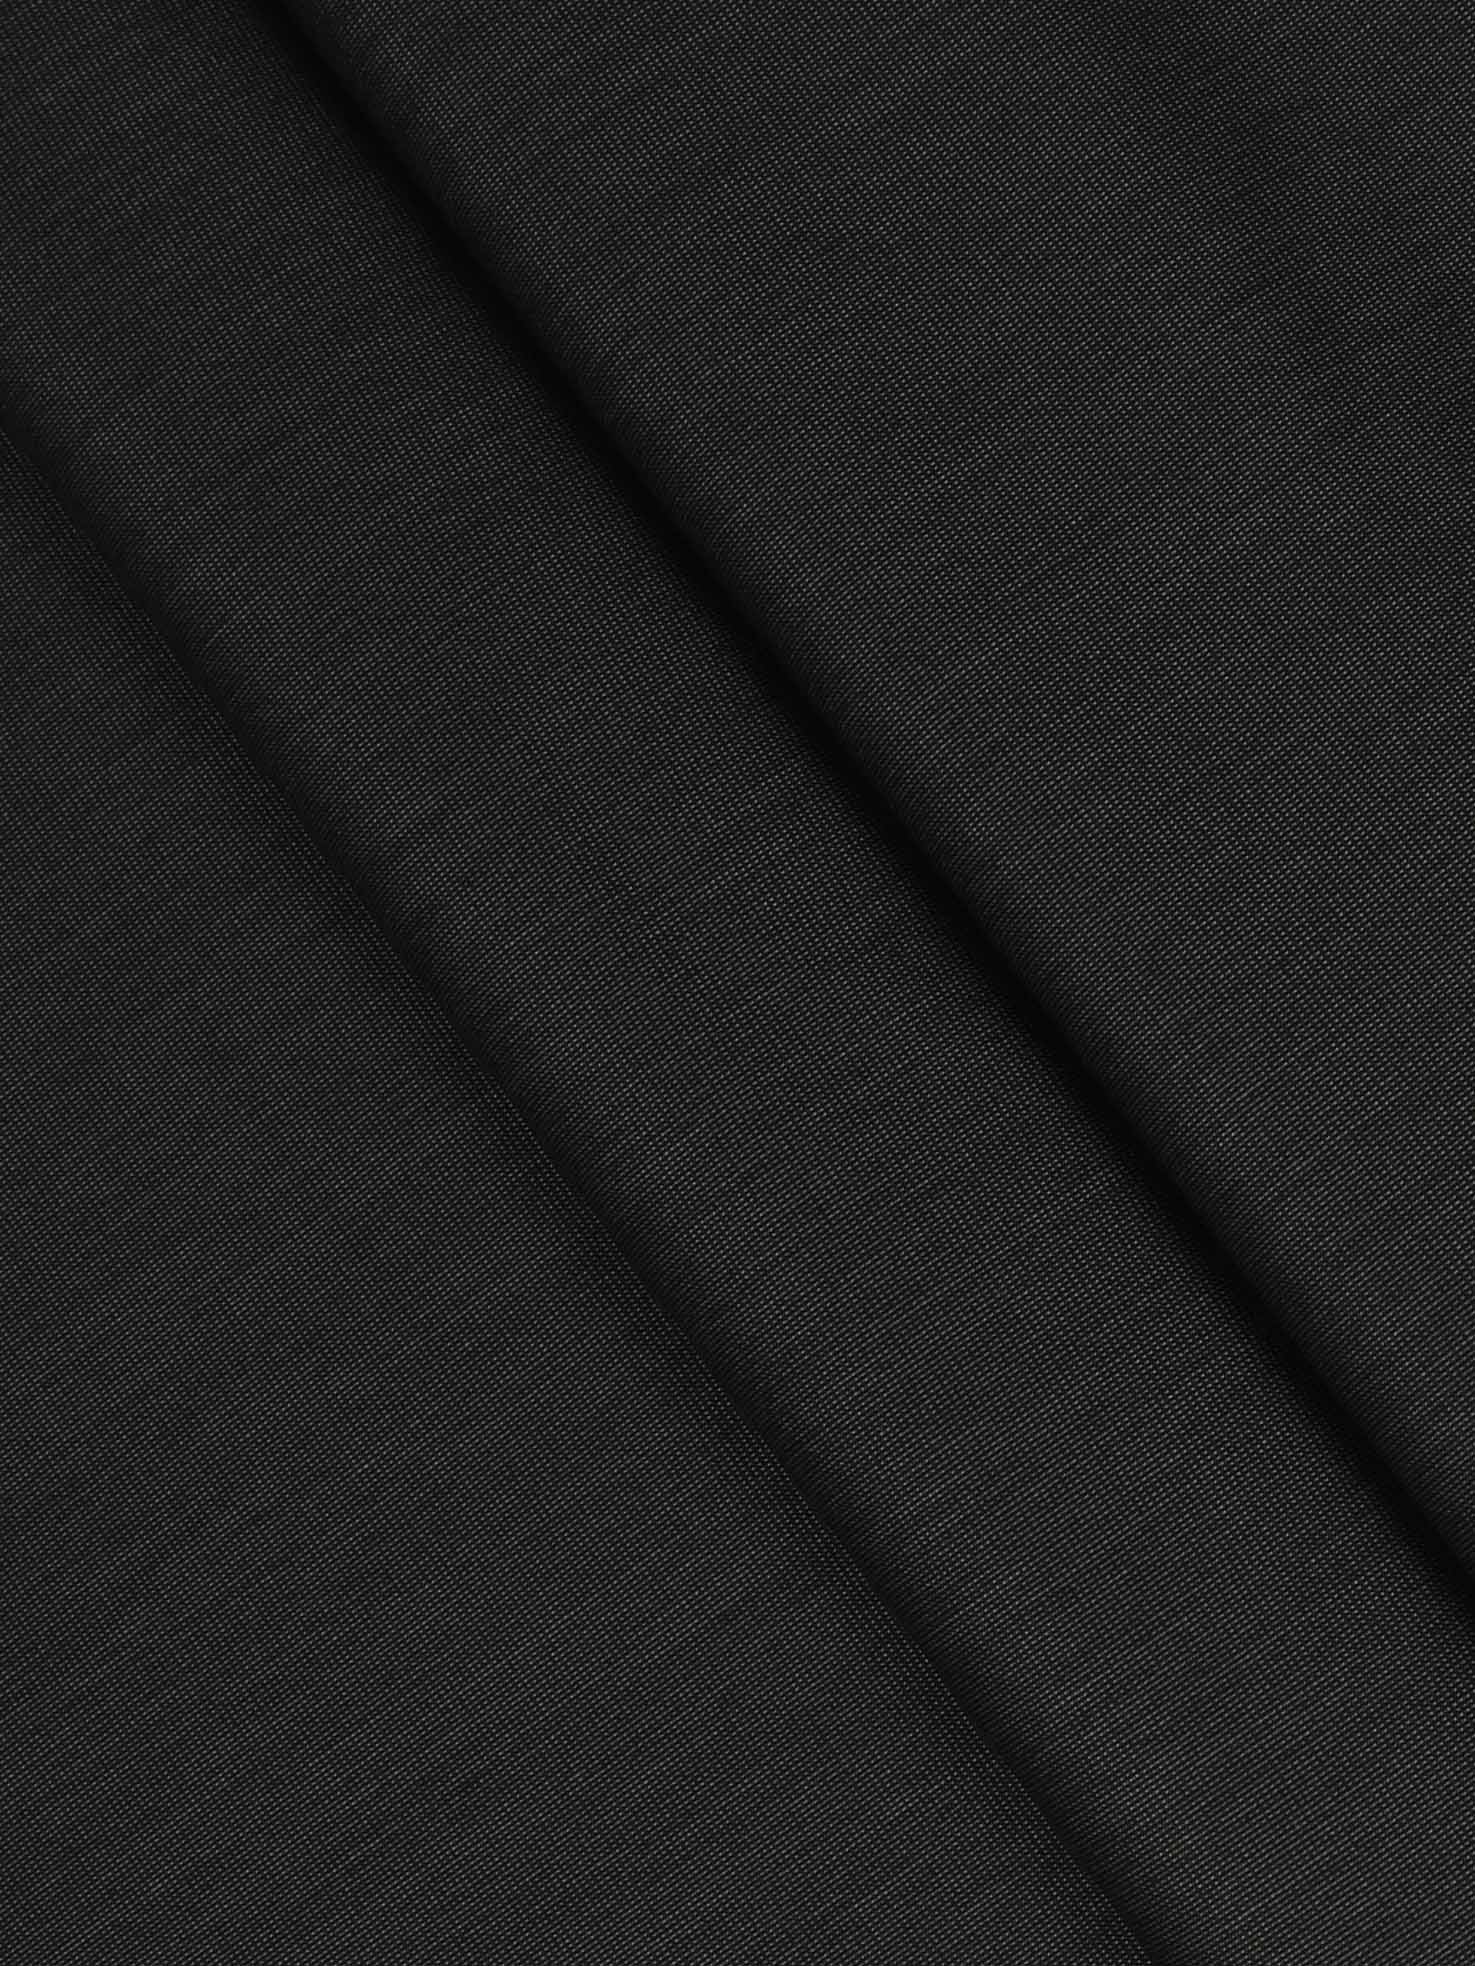 100% Premium Cotton Indigo Black Colour Plain Pants Fabric -Close view